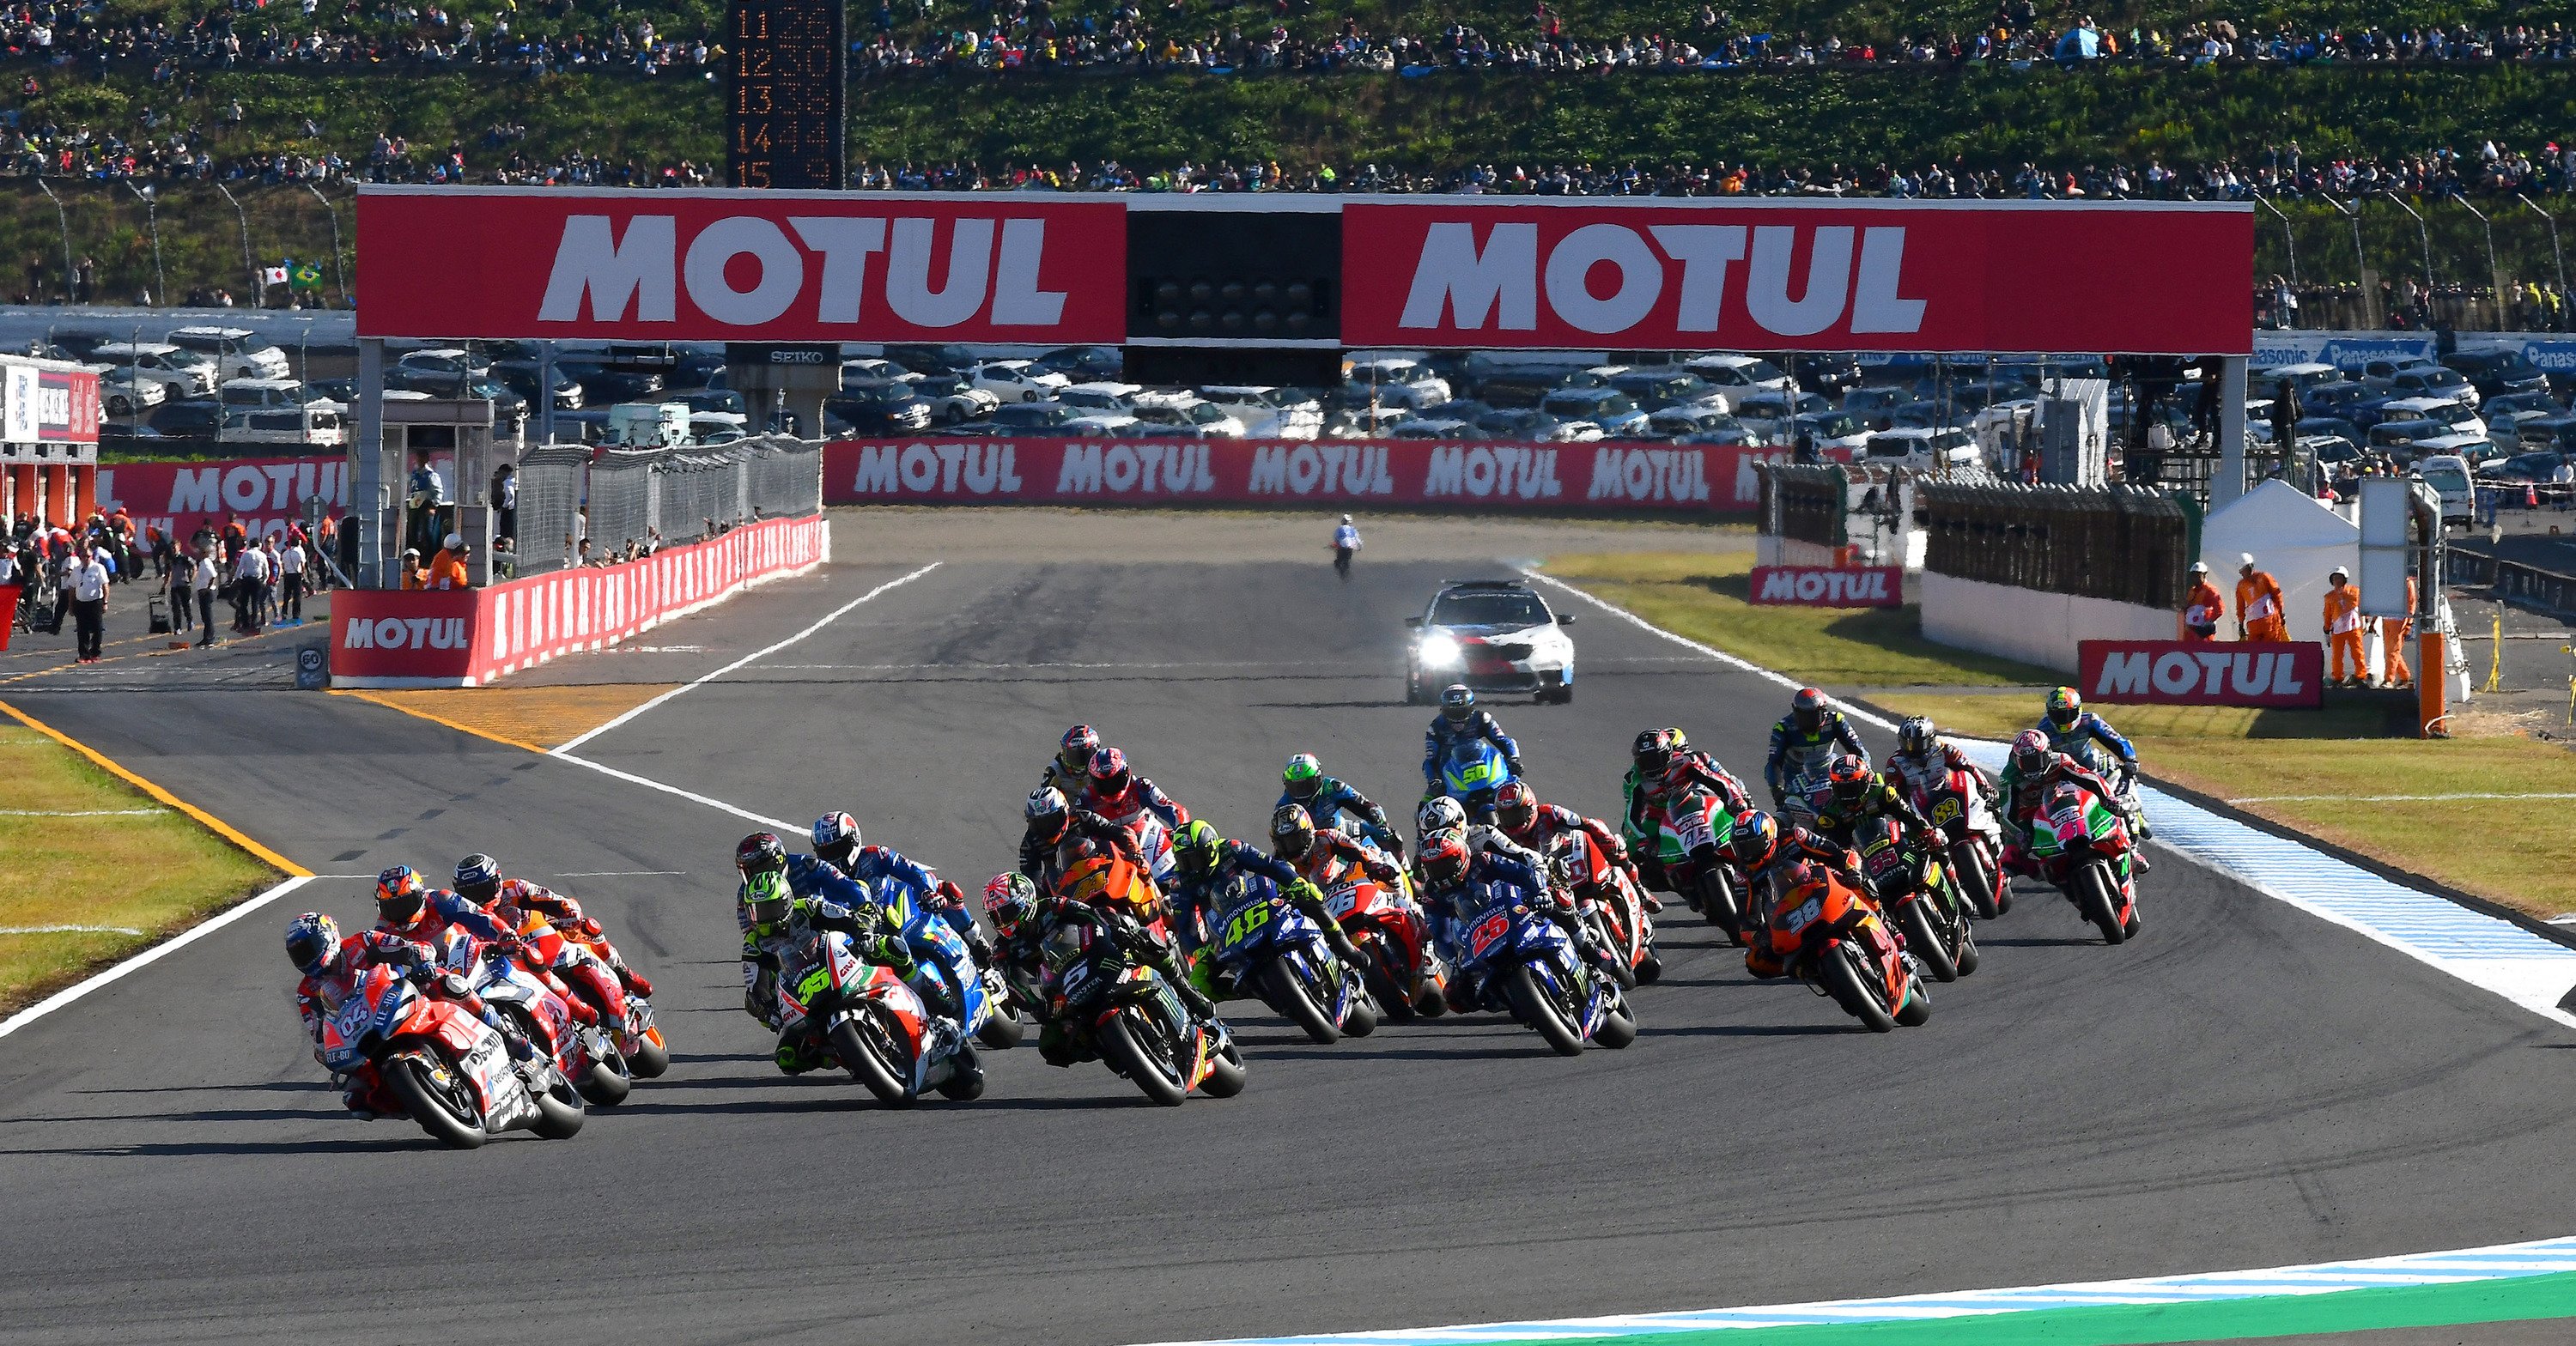 Chi vincer&agrave; la gara MotoGP in Giappone?